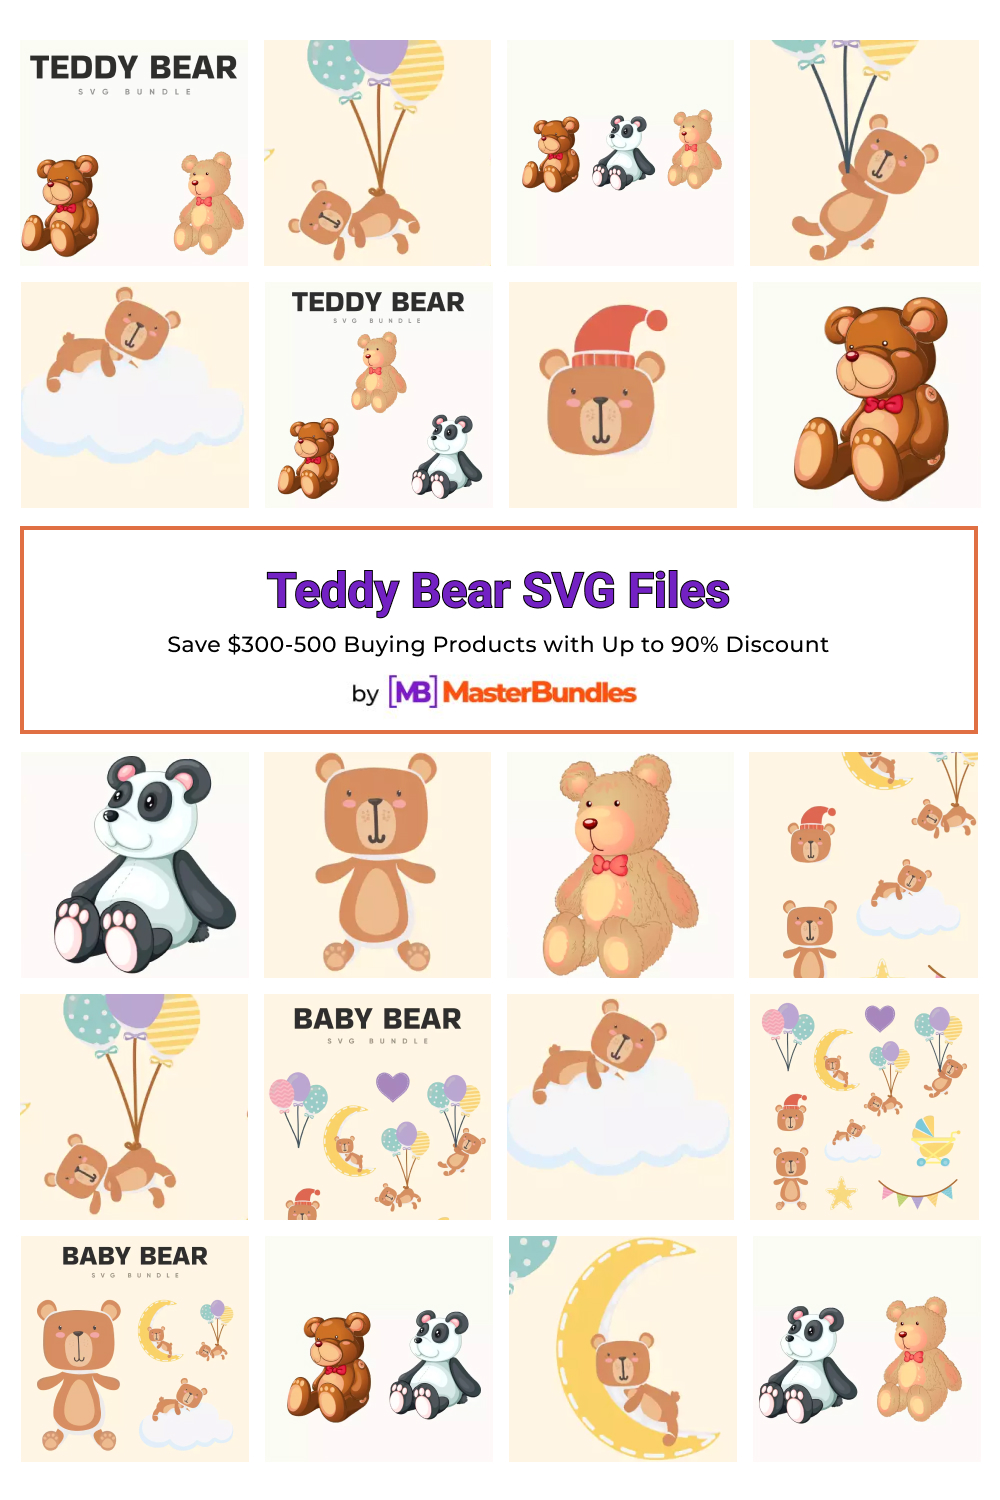 Teddy Bear SVG Files for pinterest.